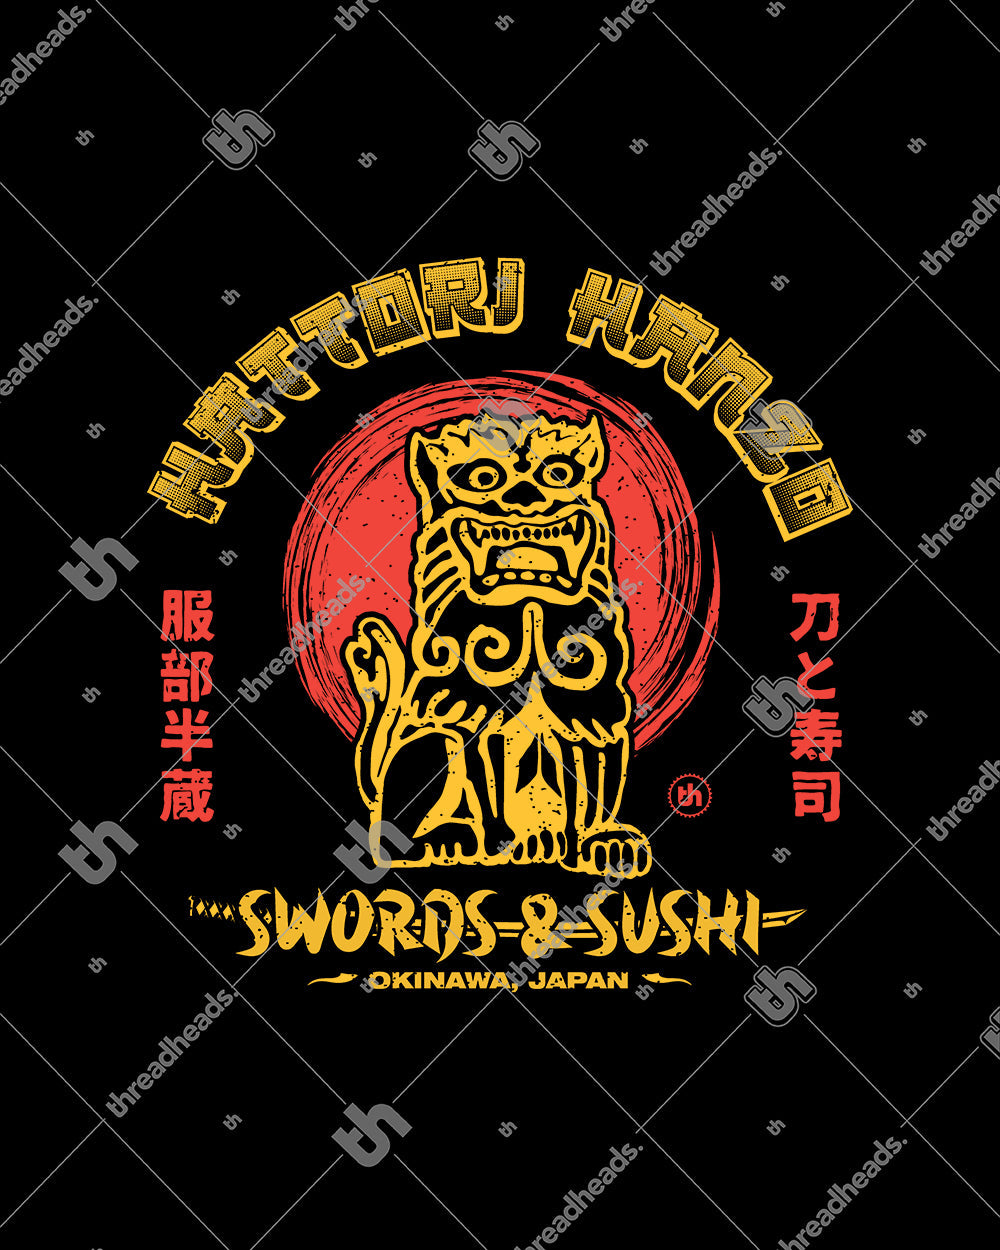 Hattori Hanzo Swords and Sushi Tote Bag Australia Online #colour_black